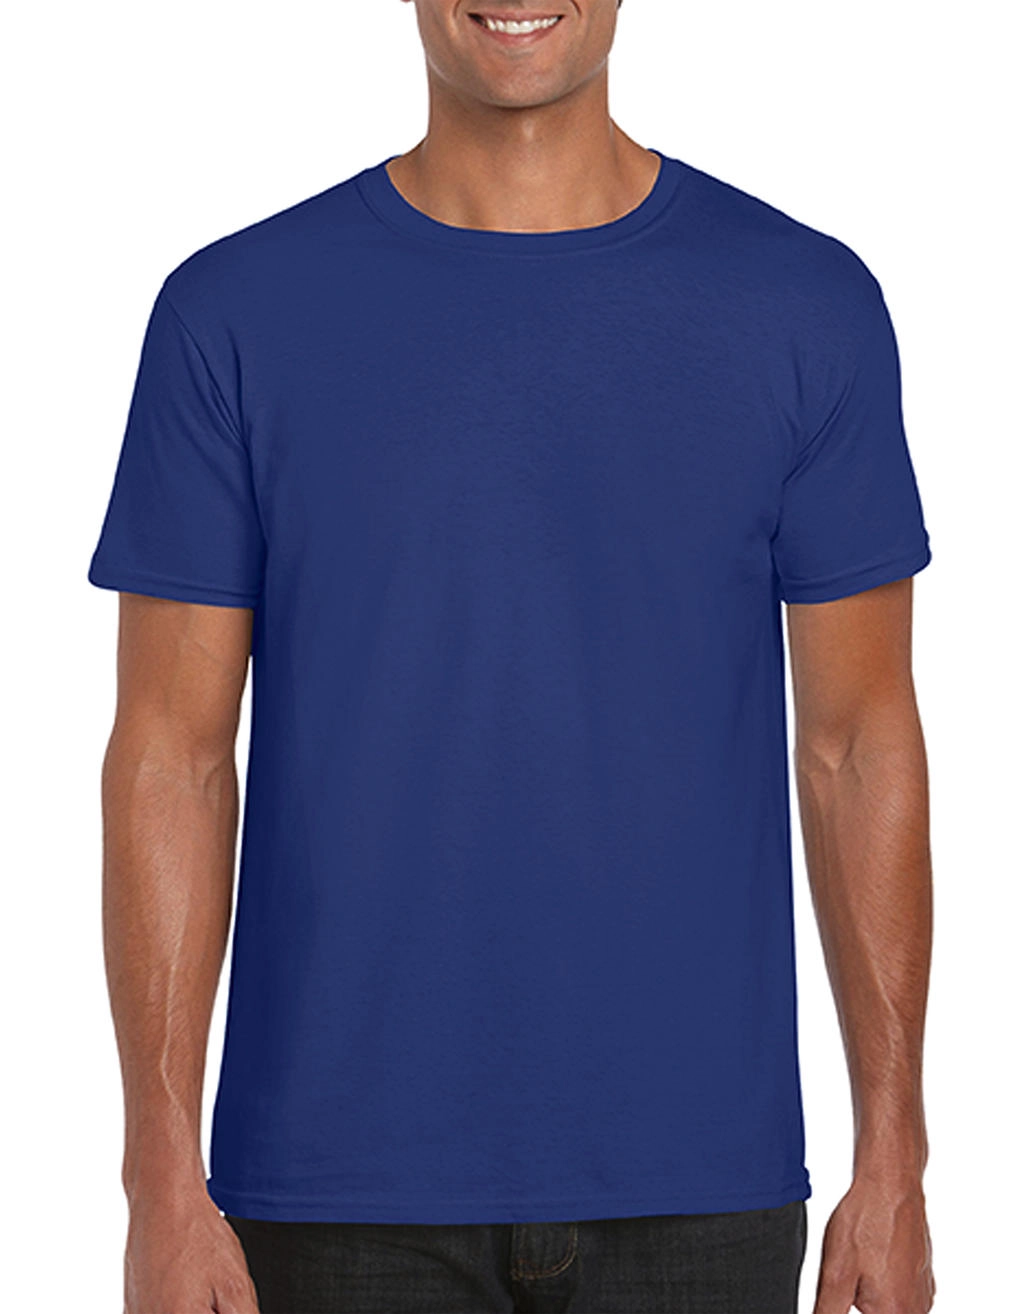 Softstyle® Ring Spun T-Shirt zum Besticken und Bedrucken in der Farbe Metro Blue mit Ihren Logo, Schriftzug oder Motiv.